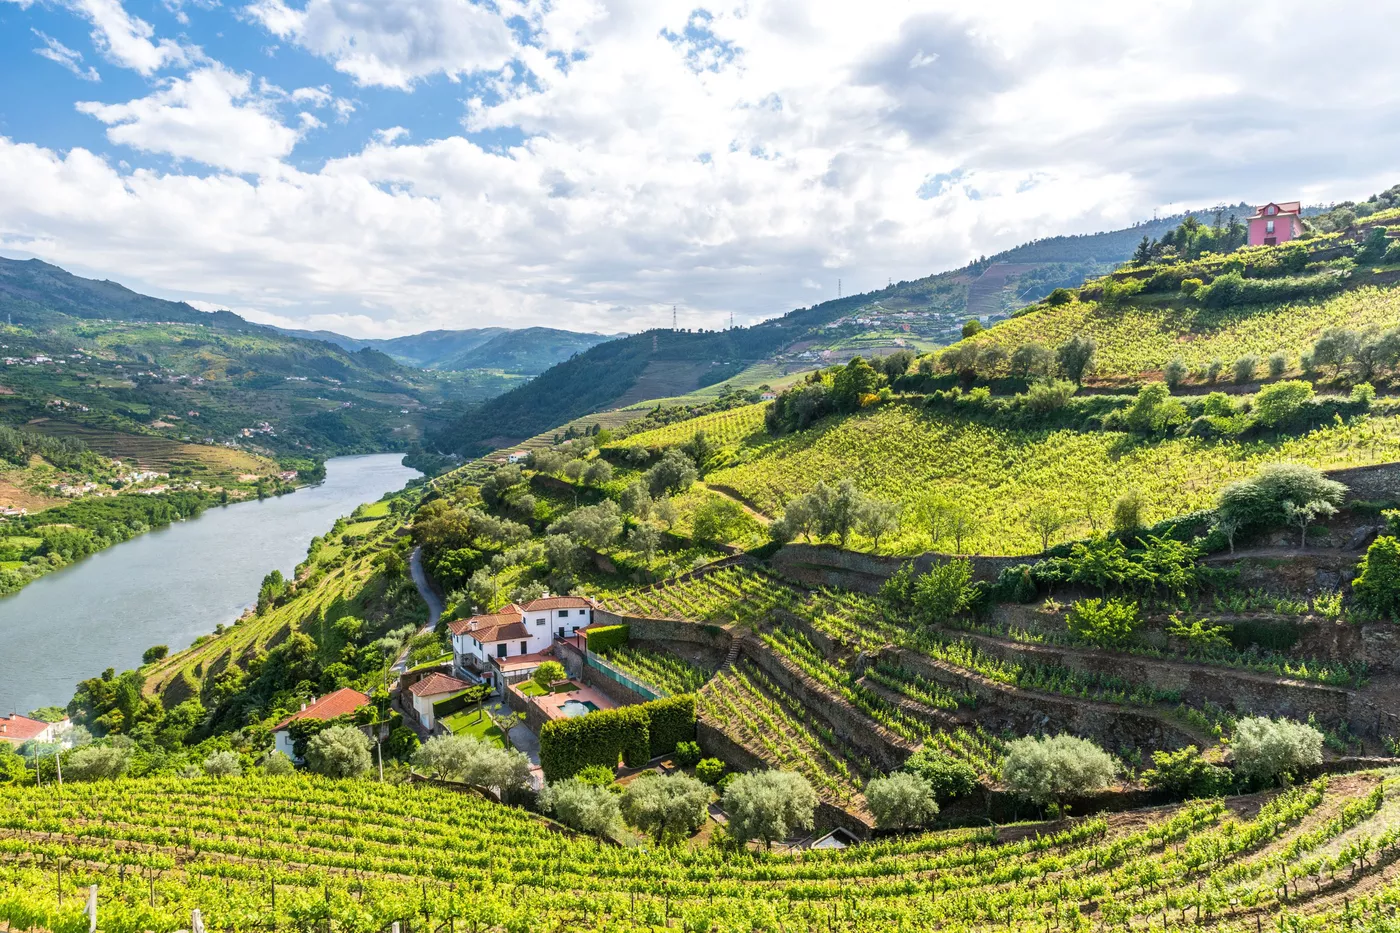 Douro Valley Full-Day Wine Tour